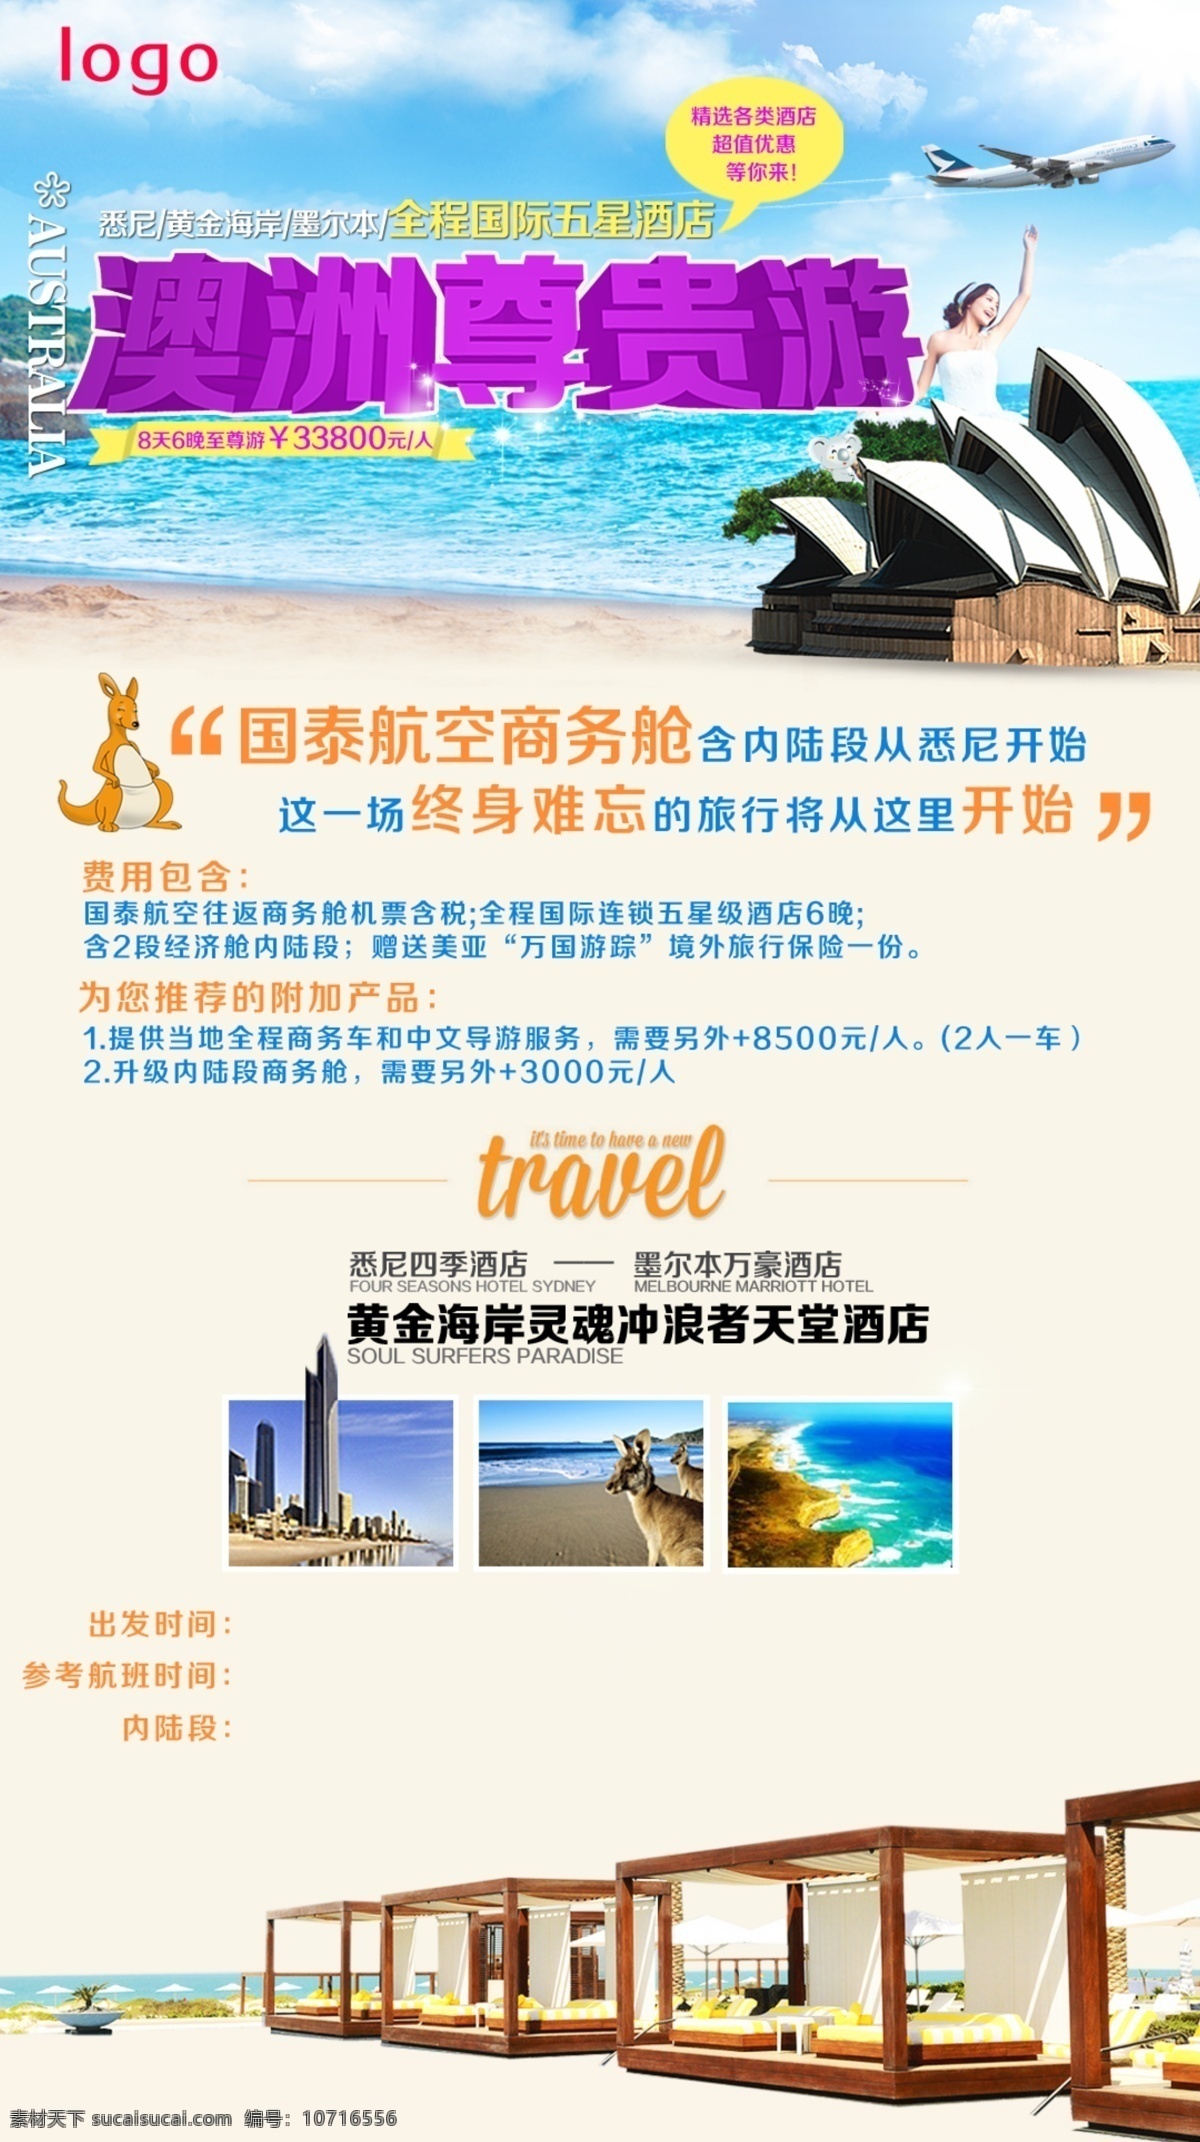 澳洲 悉尼 黄金海岸 墨尔本 旅游 广告 海报宣传 旅游设计 旅行广告设计 微信图片 自由行 五星